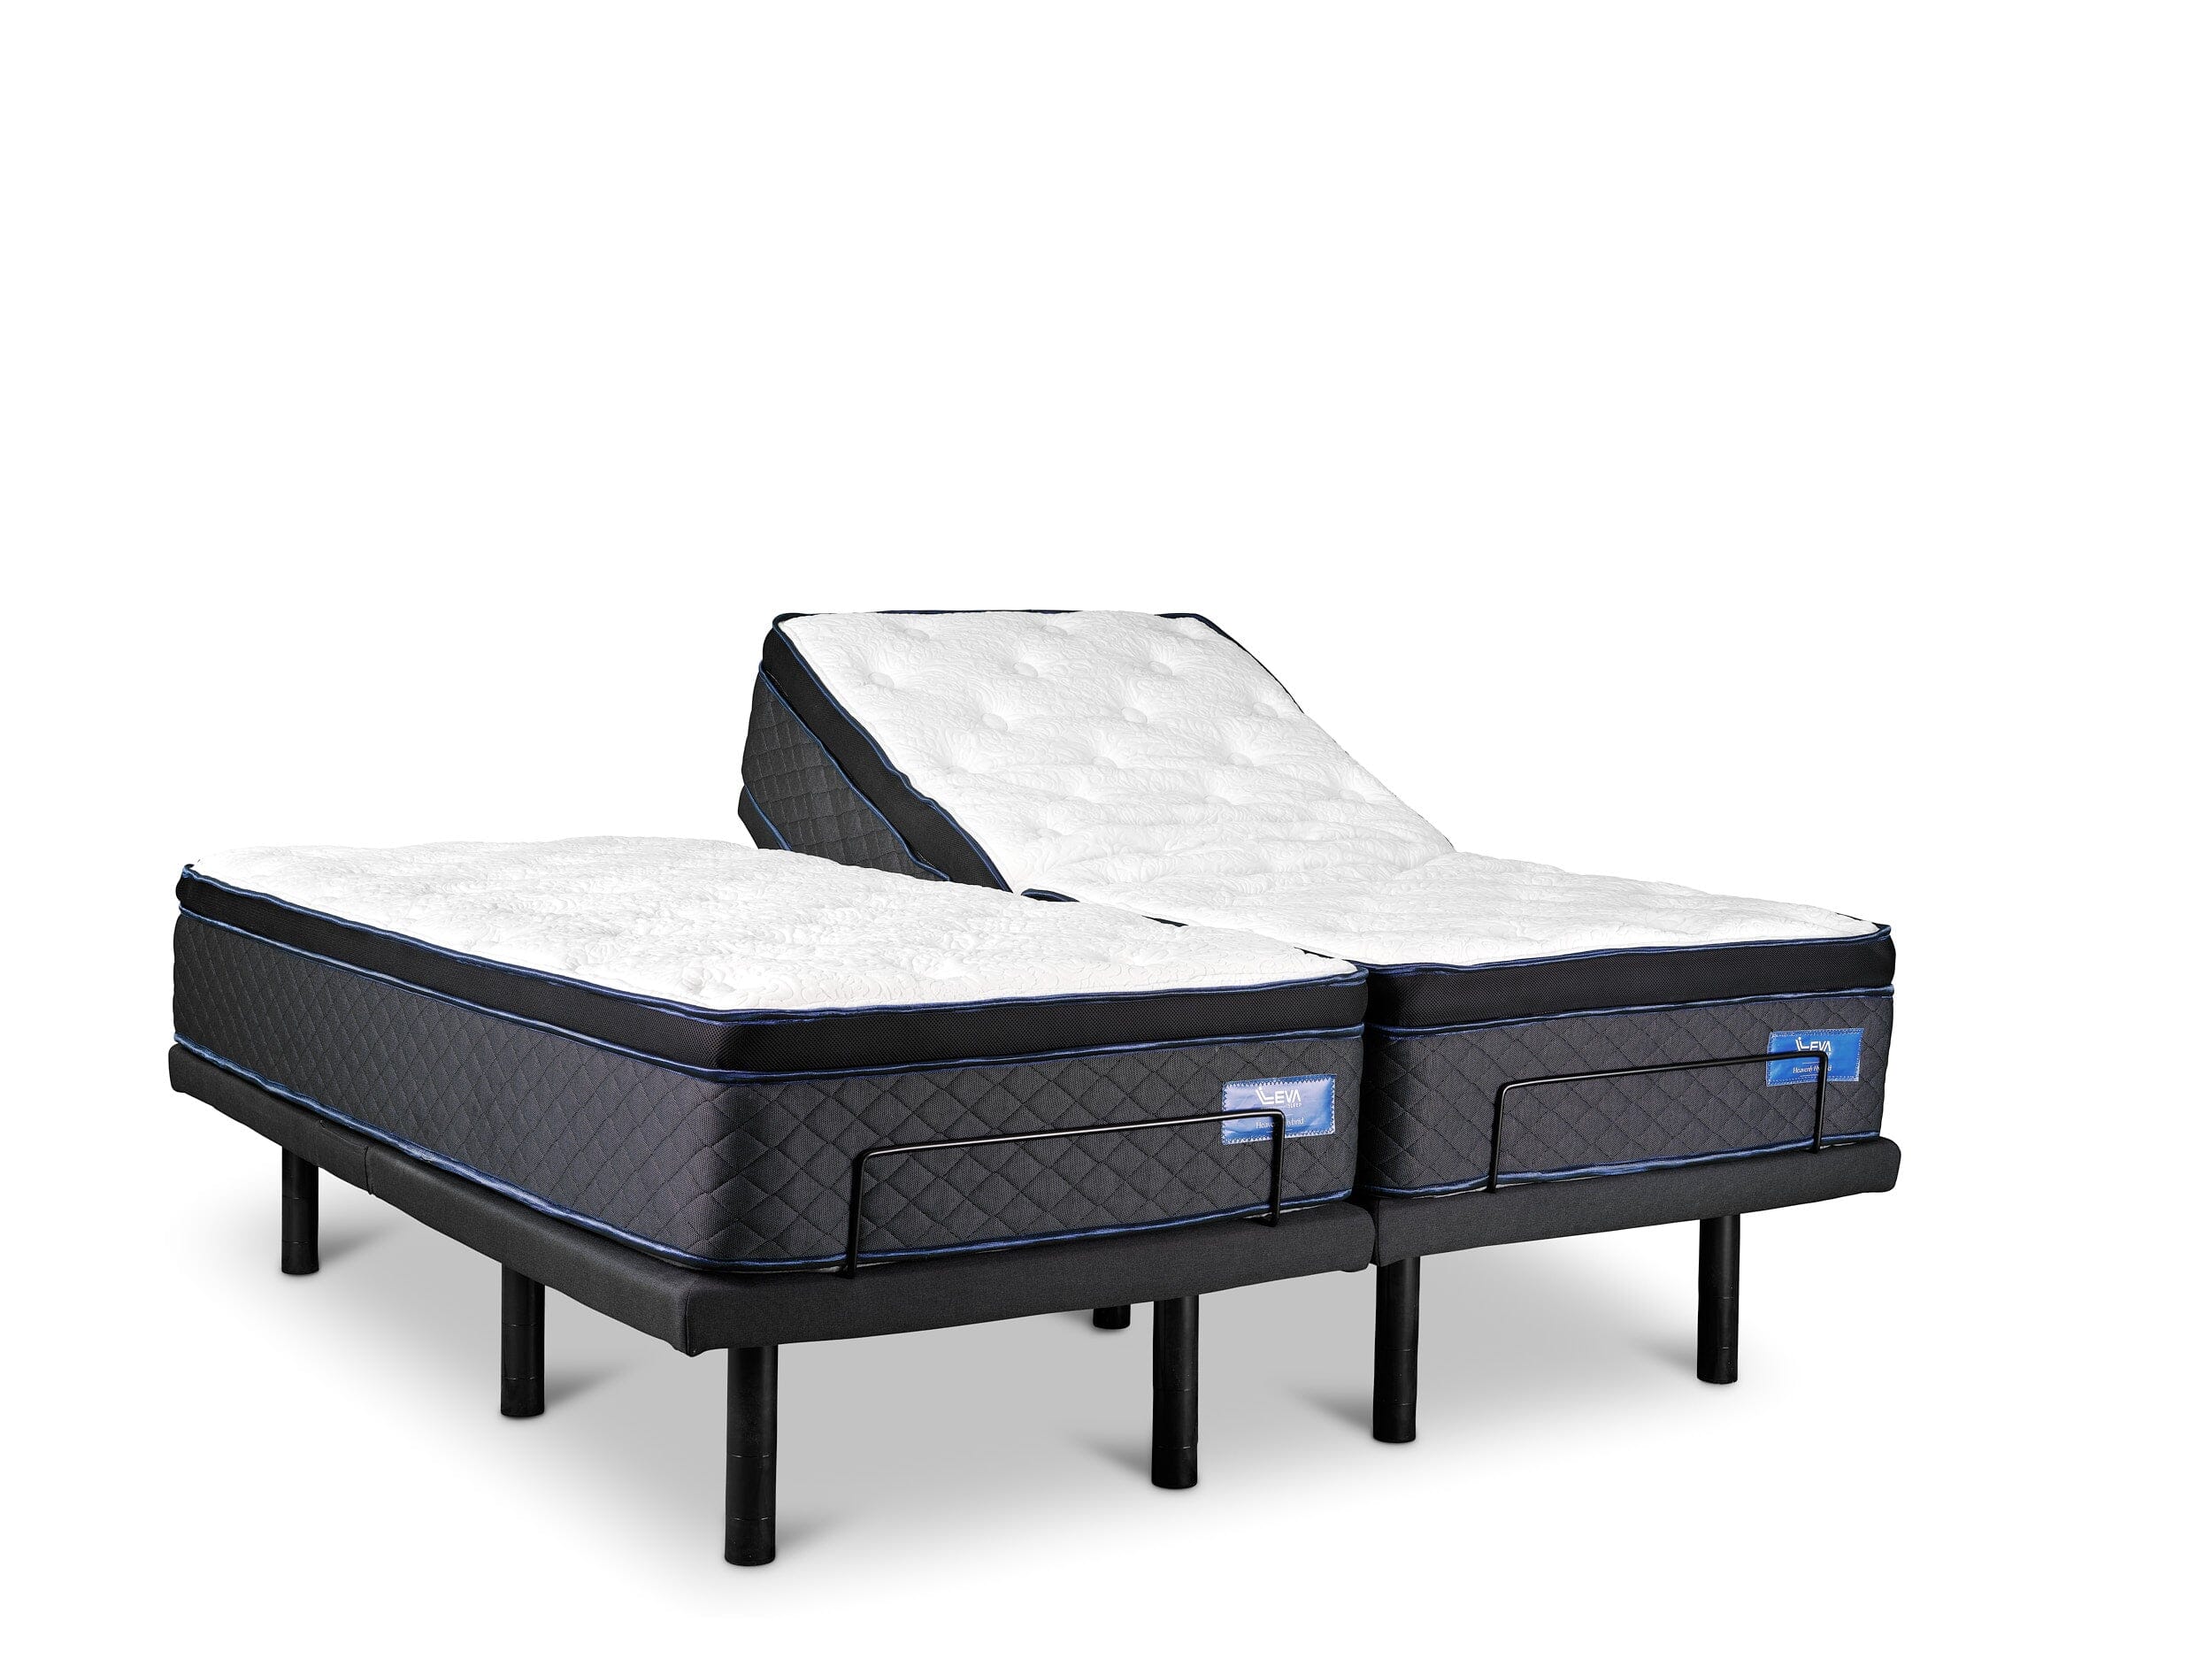 Heavenly Hybrid Split King Adjustable Bed